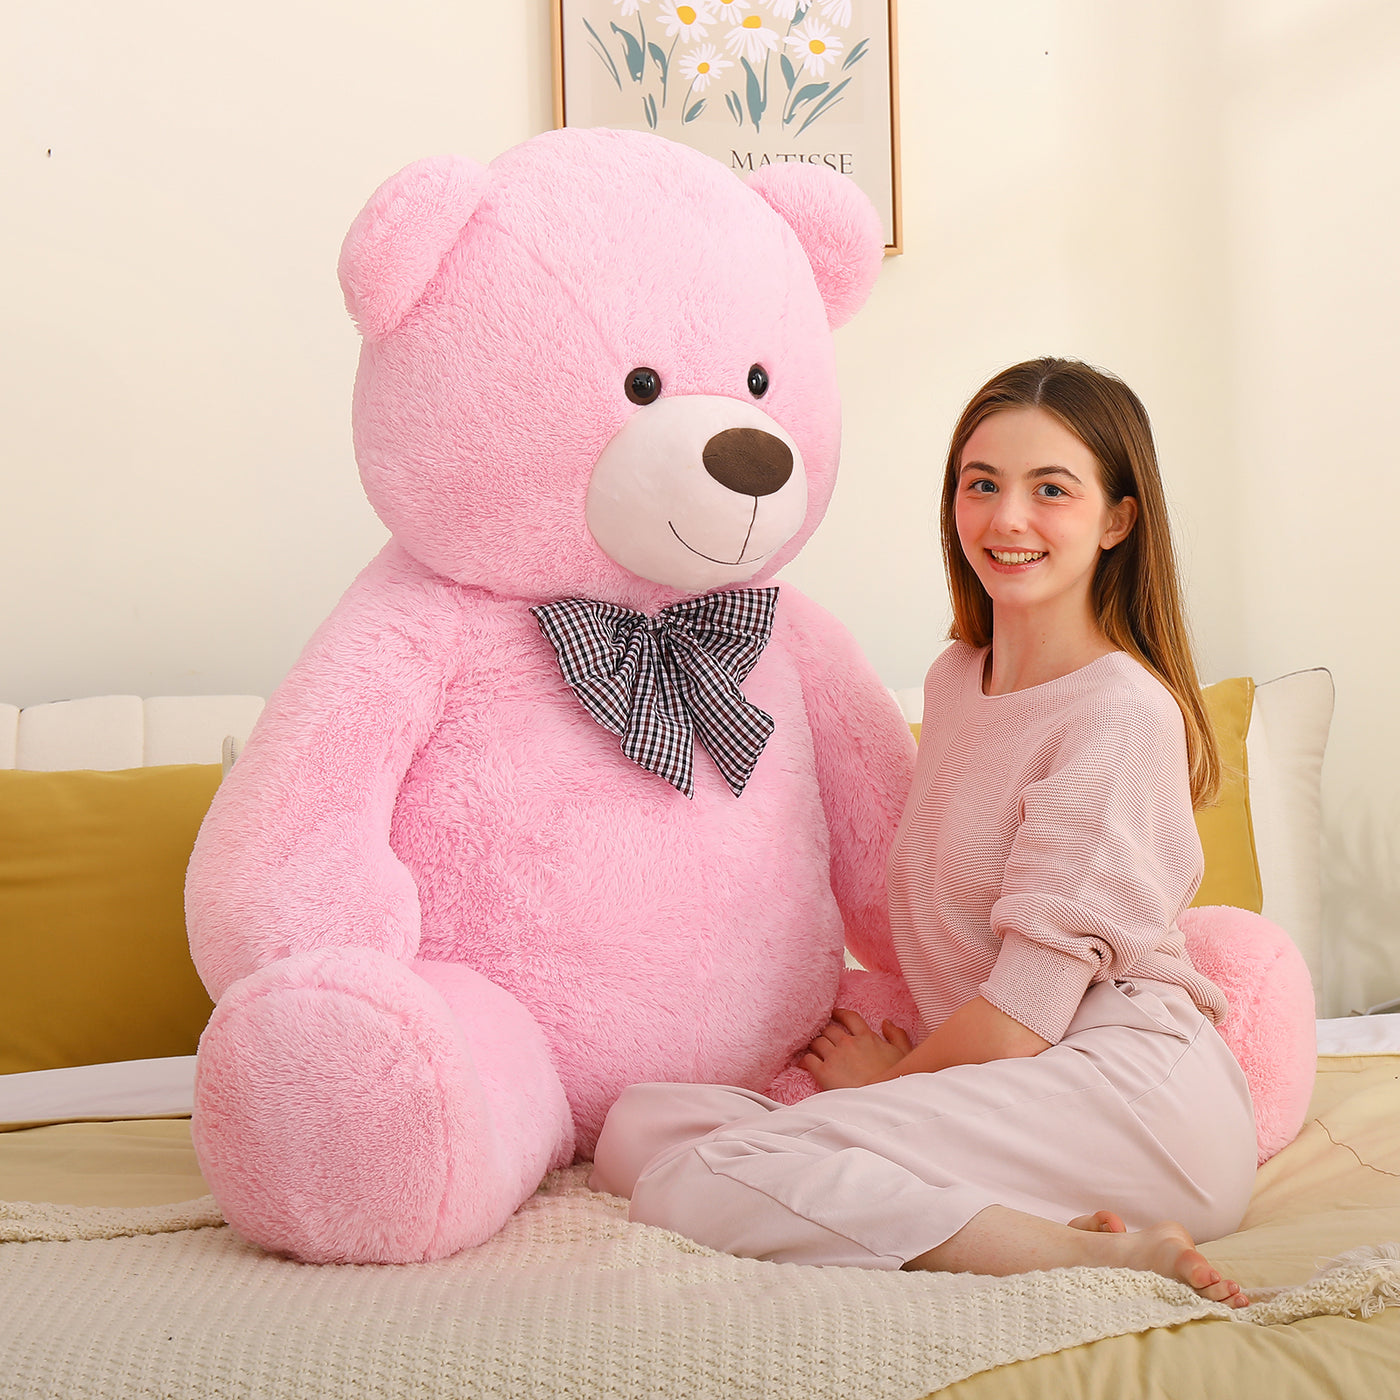 MaoGoLan Giant Pink Teddy Bear Stuffed Animal 5 Feet,Soft Cuddly Smiling Face Big Teddy Bear Plush Gift for Boyfriend Girlfriend